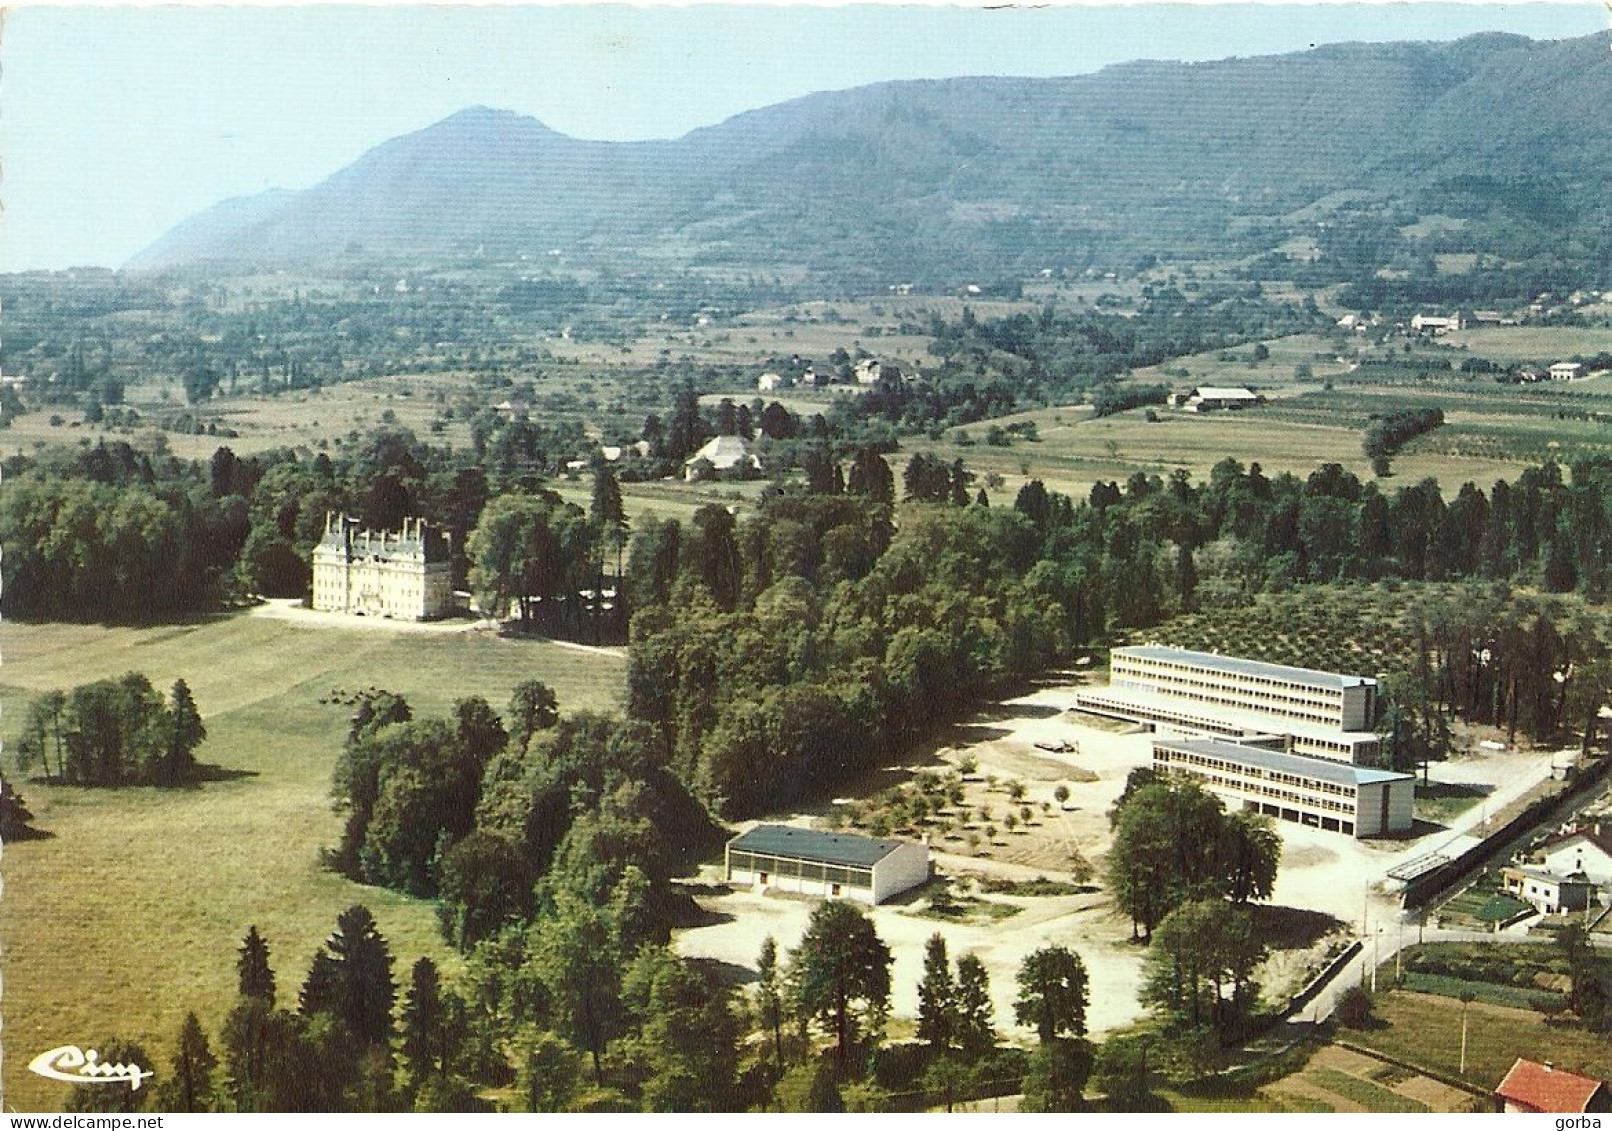 *CPM  -73 - LA MOTTE SERVOLEX - Lycée Agricole "Domaine Reinach" - Vue Aérienne - La Motte Servolex